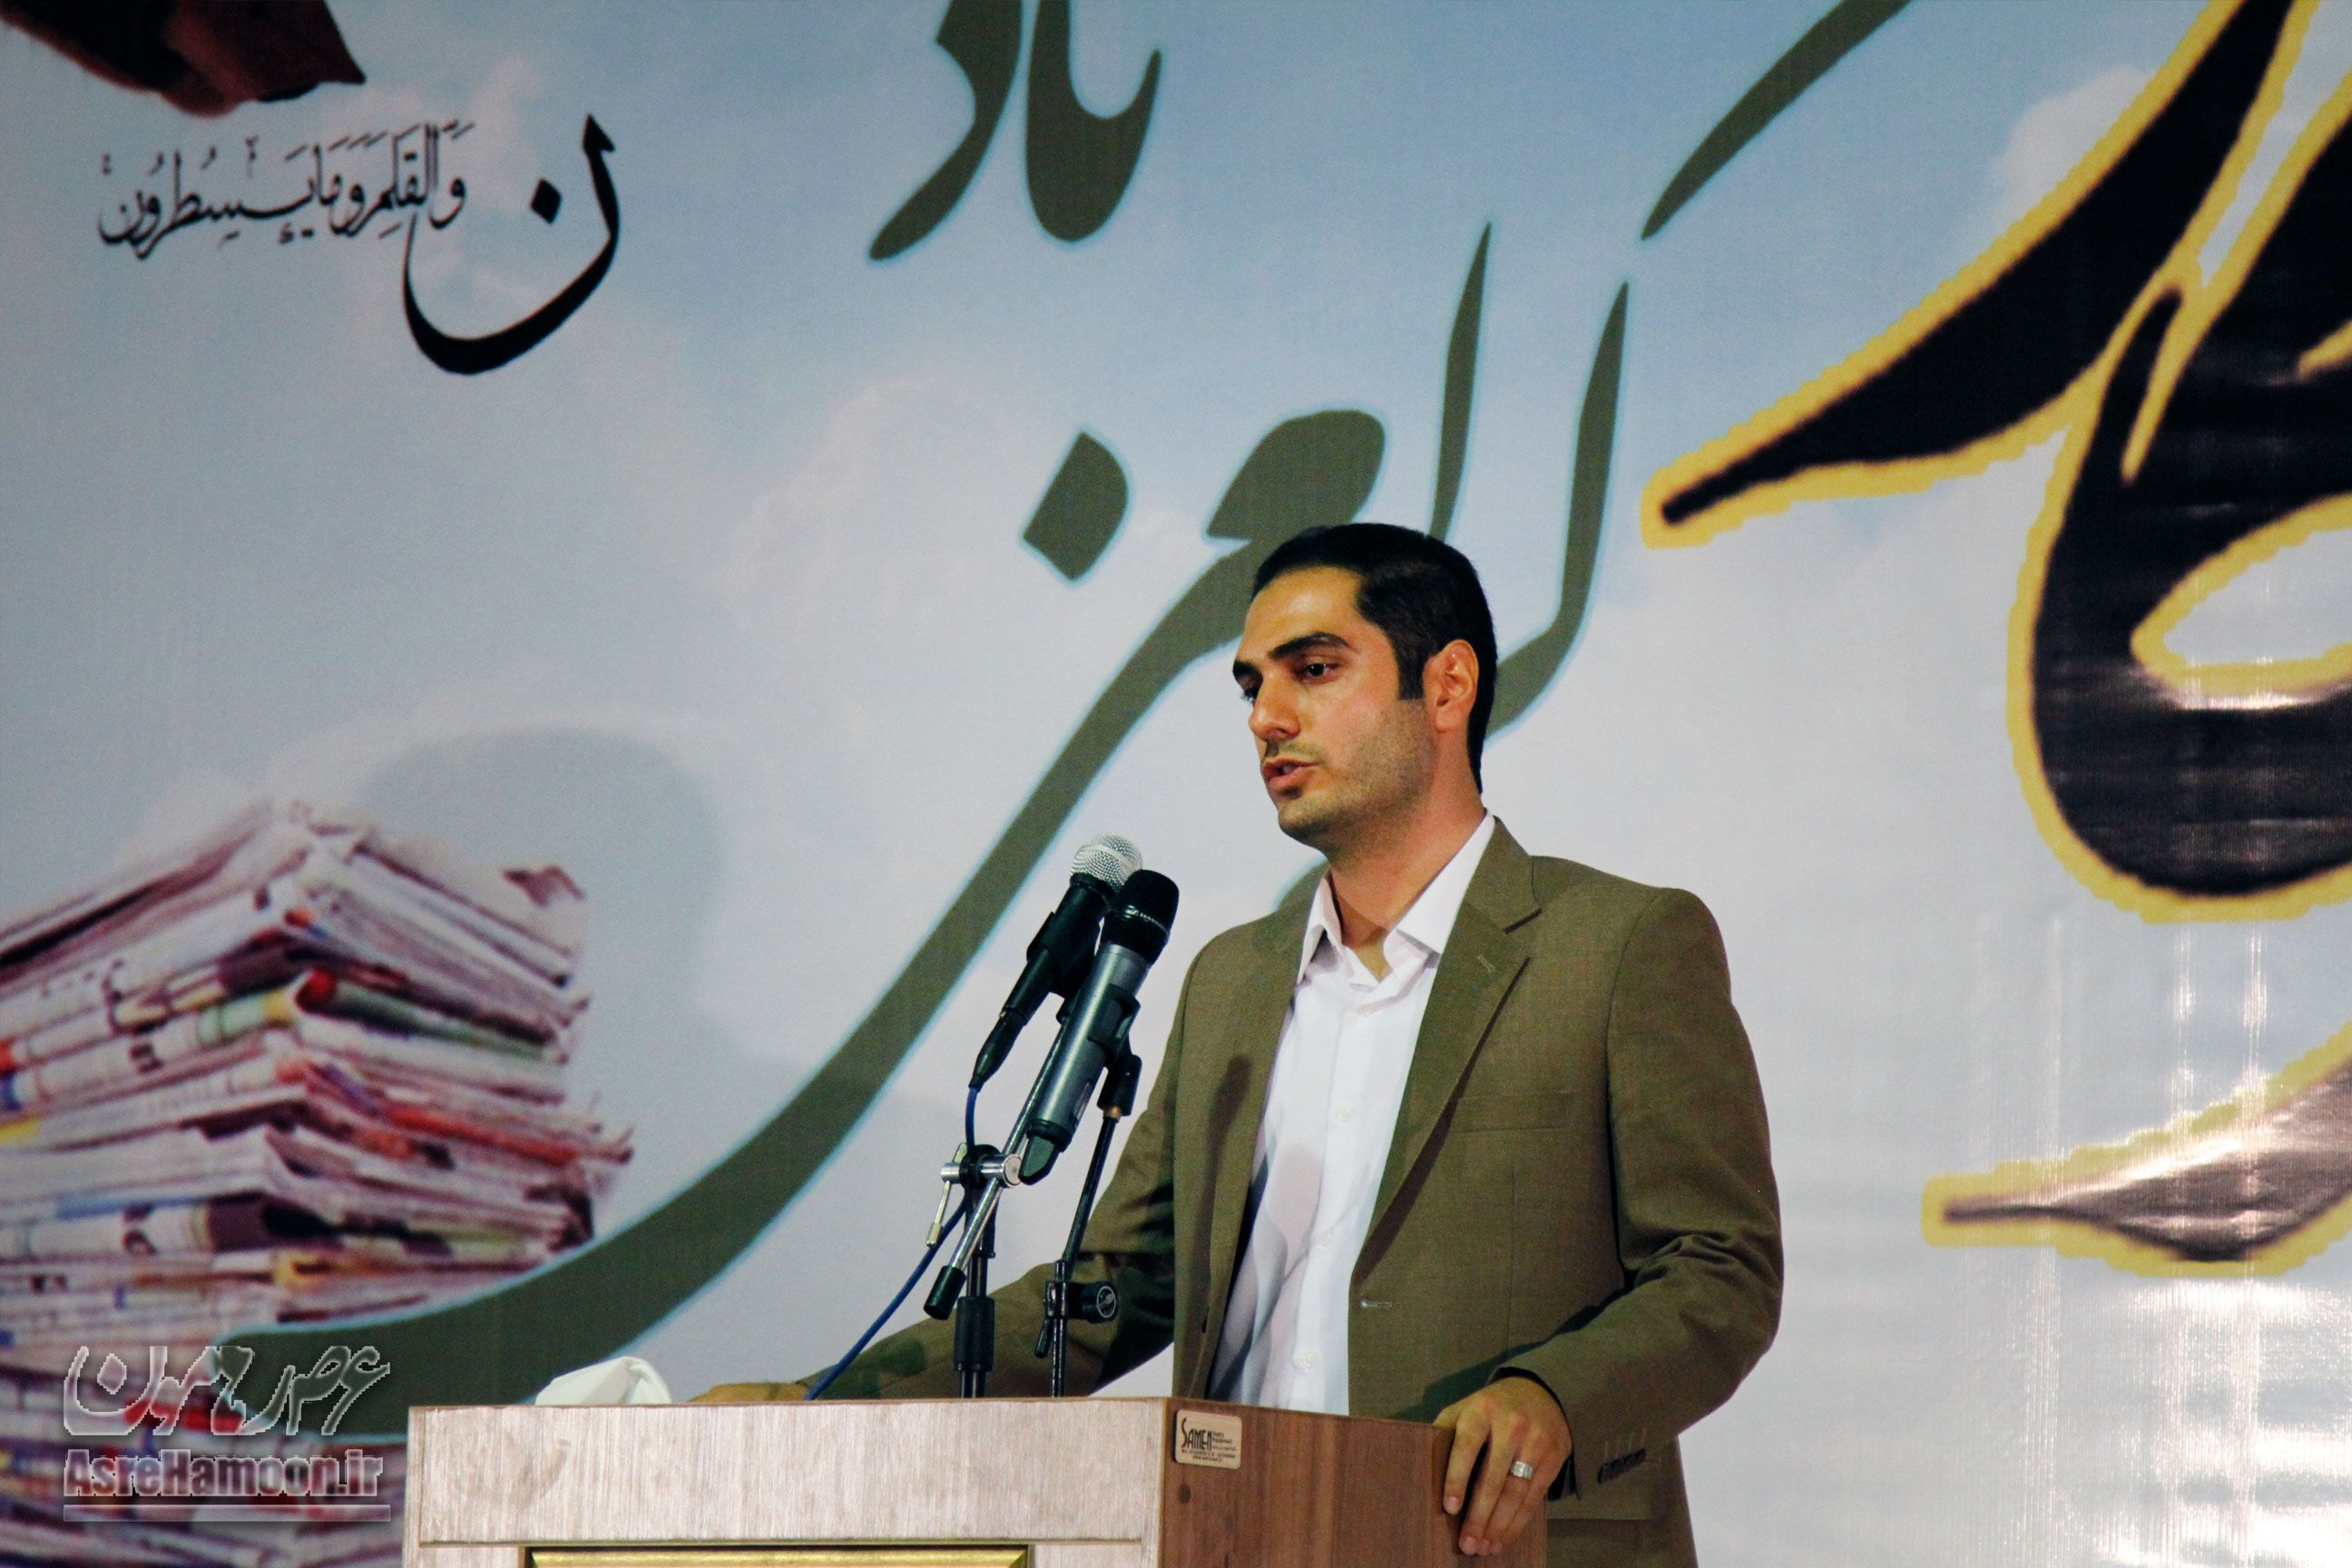 آرشام هنرکار - قائم مقام خانه مطبوعات سیستان و بلوچستان - آیین تجلیل از خبرنگاران زاهدان